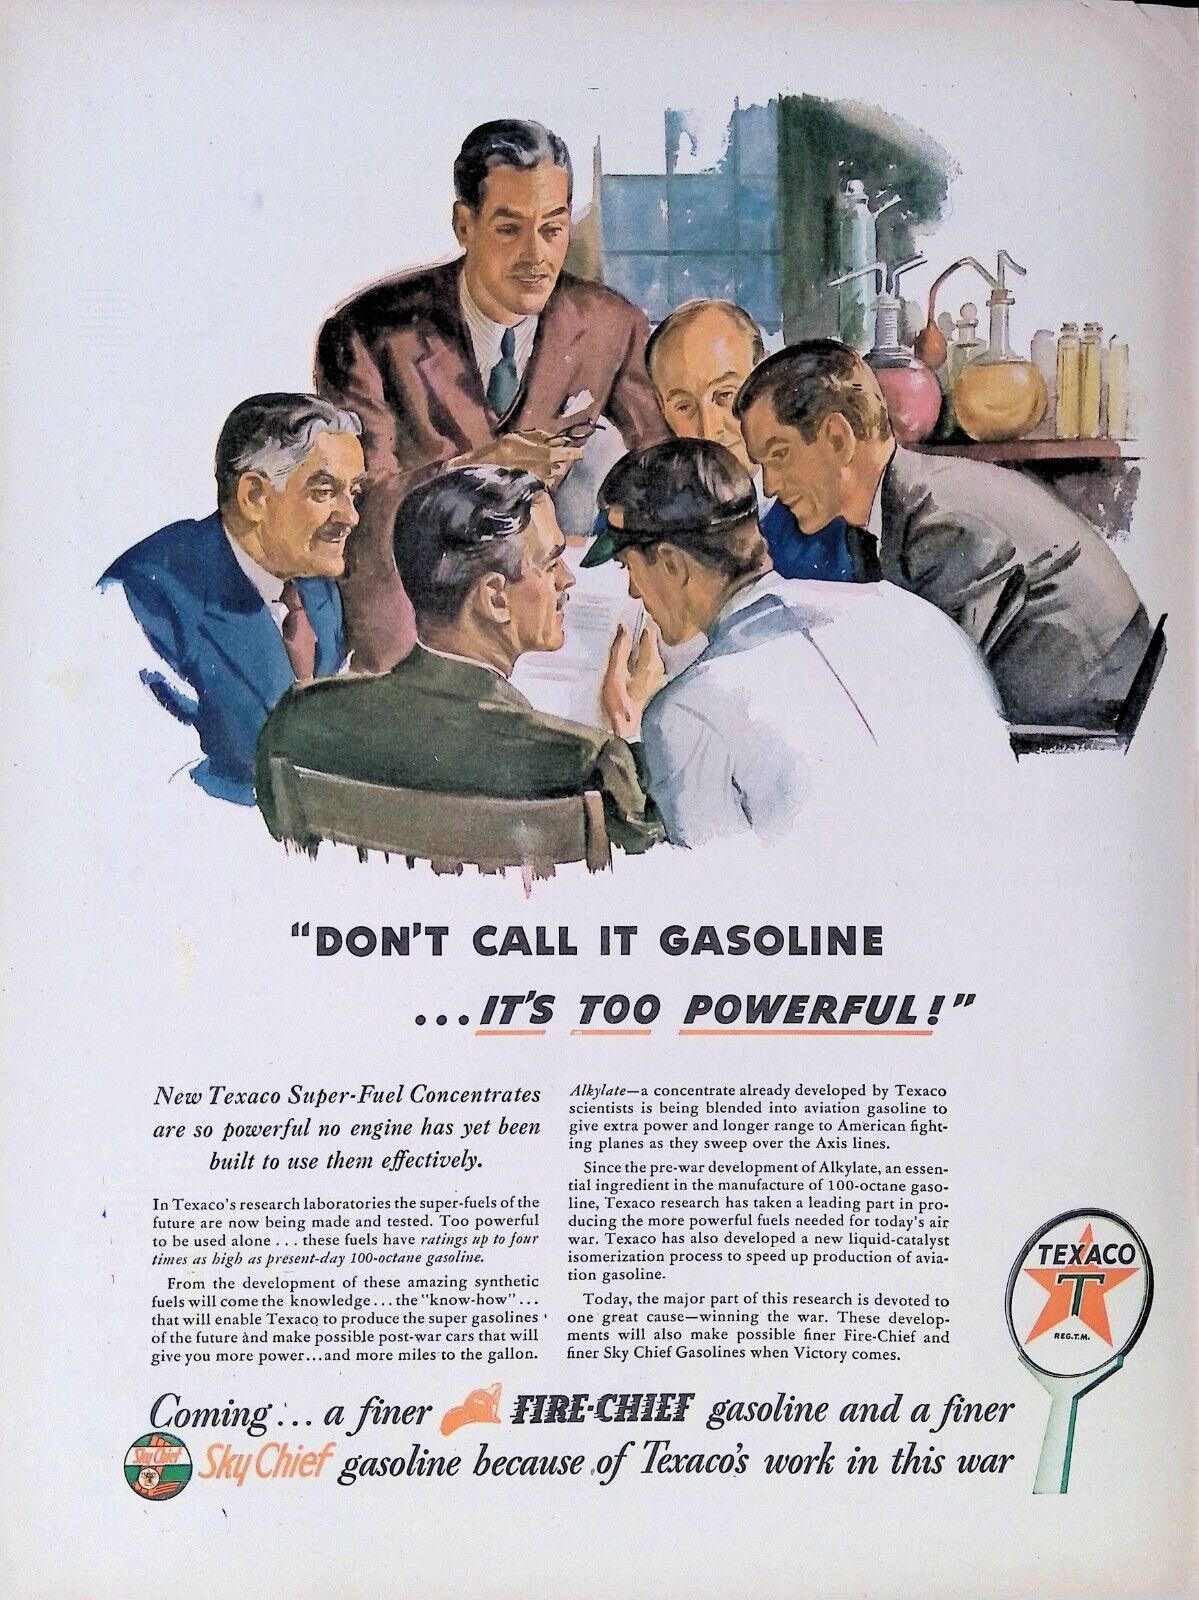 Print Ad 1940's Texaco Fire-Chief Gasoline Research Laboratory Male Scientists